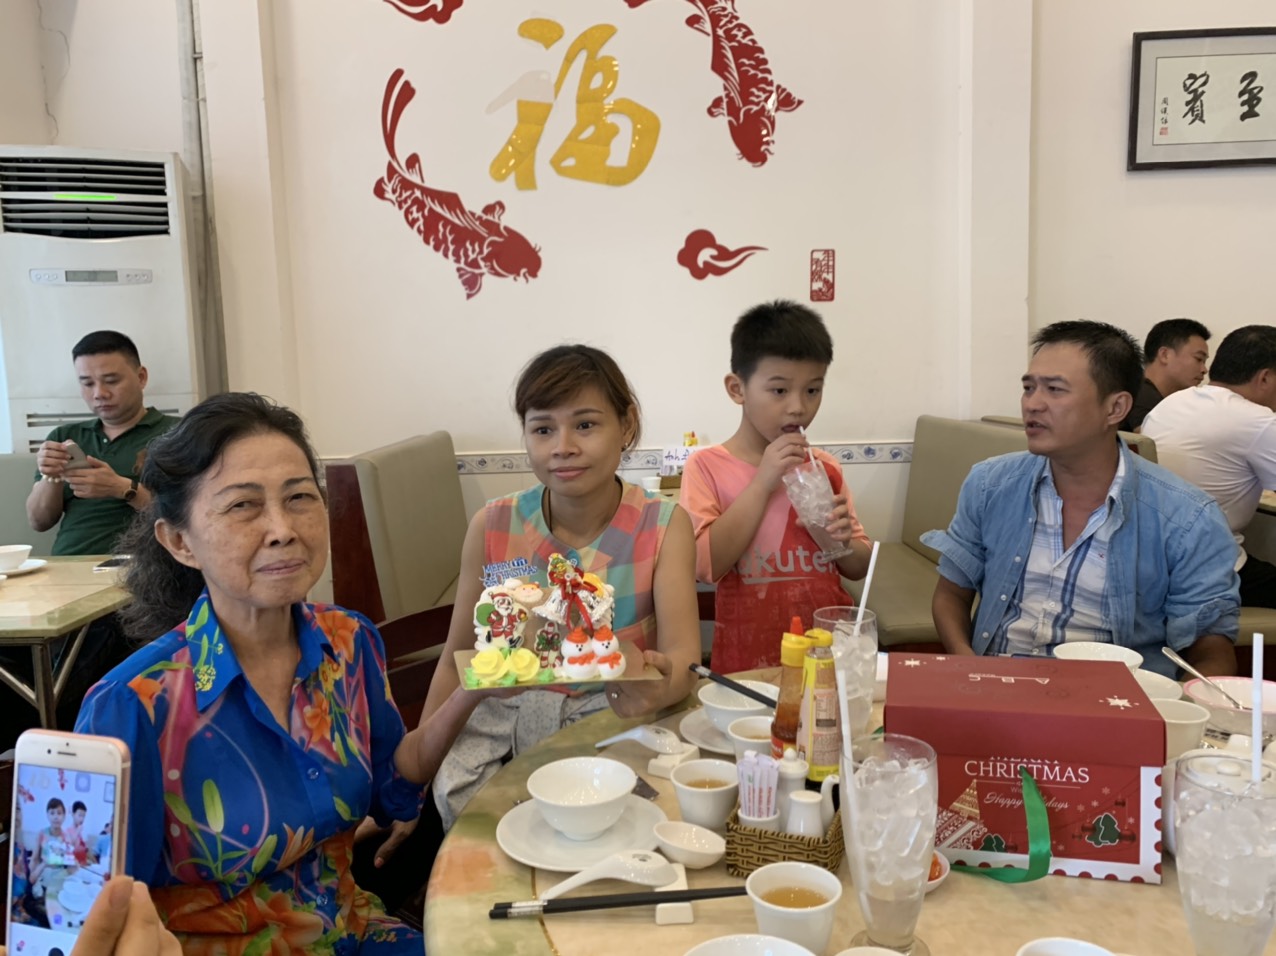 Noel năm 2019 khách đến đông đúc và nhận được quà từ ông già Noel đây - Haihoangbinhtan.com 2